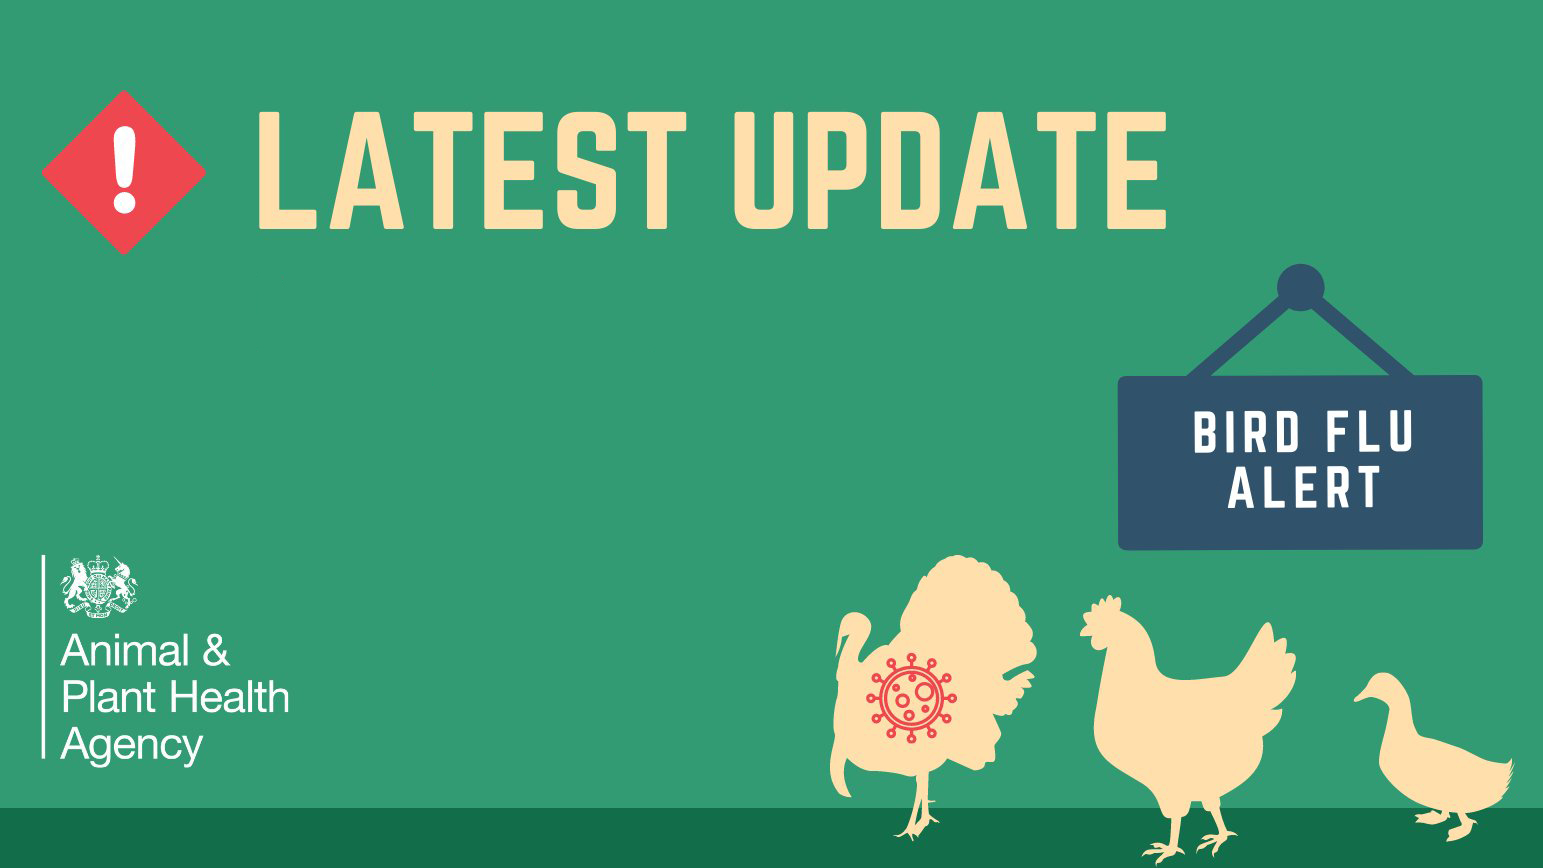 Latest updates on bird flu